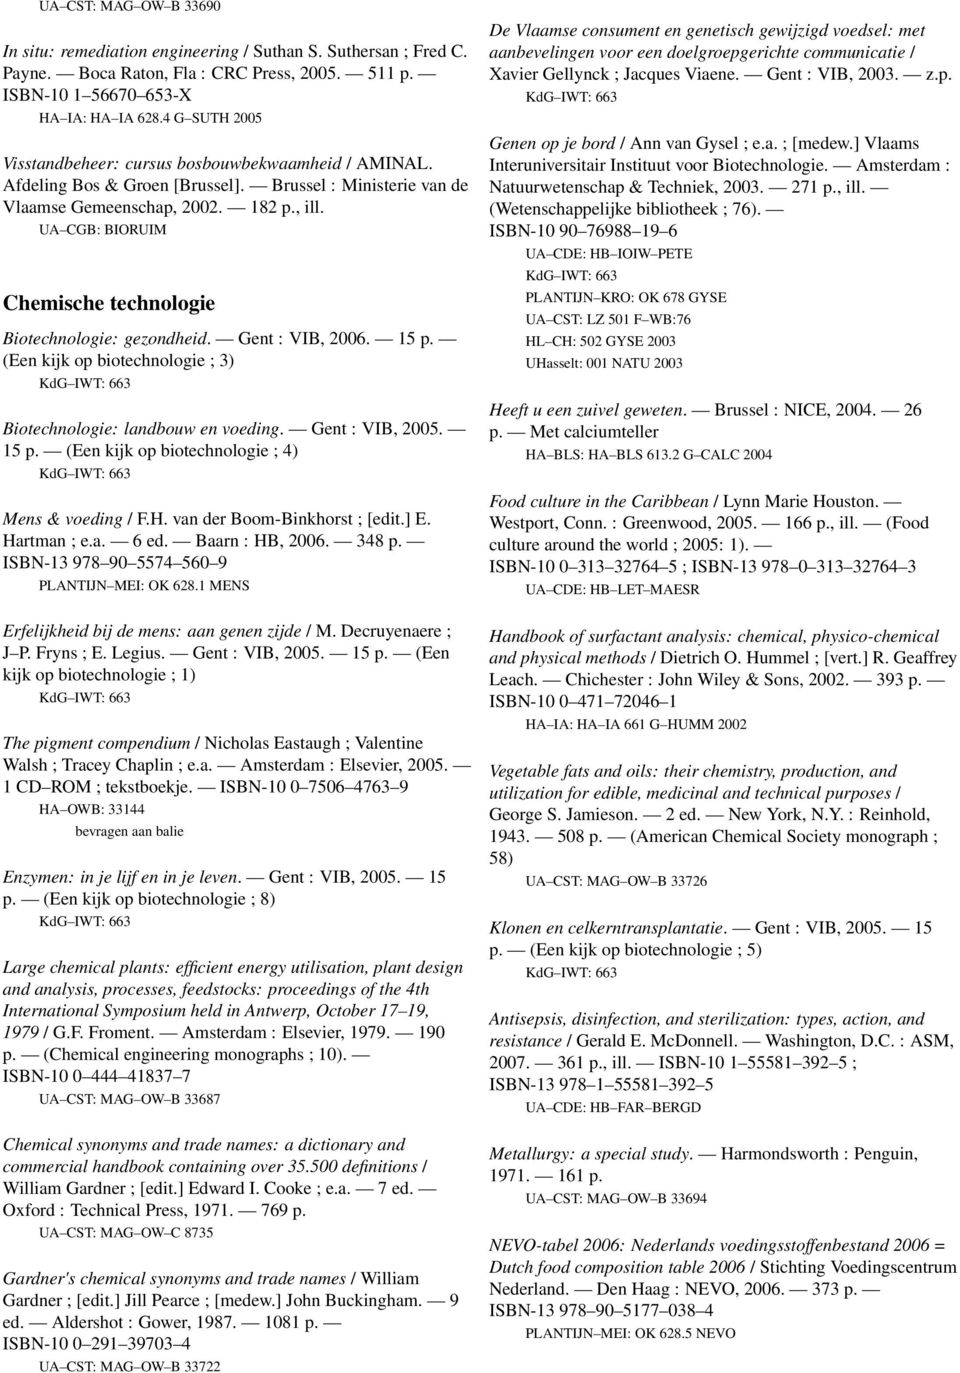 Chemische technologie Biotechnologie: gezondheid. Gent : VIB, 2006. 15 p. (Een kijk op biotechnologie ; 3) Biotechnologie: landbouw en voeding. Gent : VIB, 2005. 15 p. (Een kijk op biotechnologie ; 4) Mens & voeding / F.